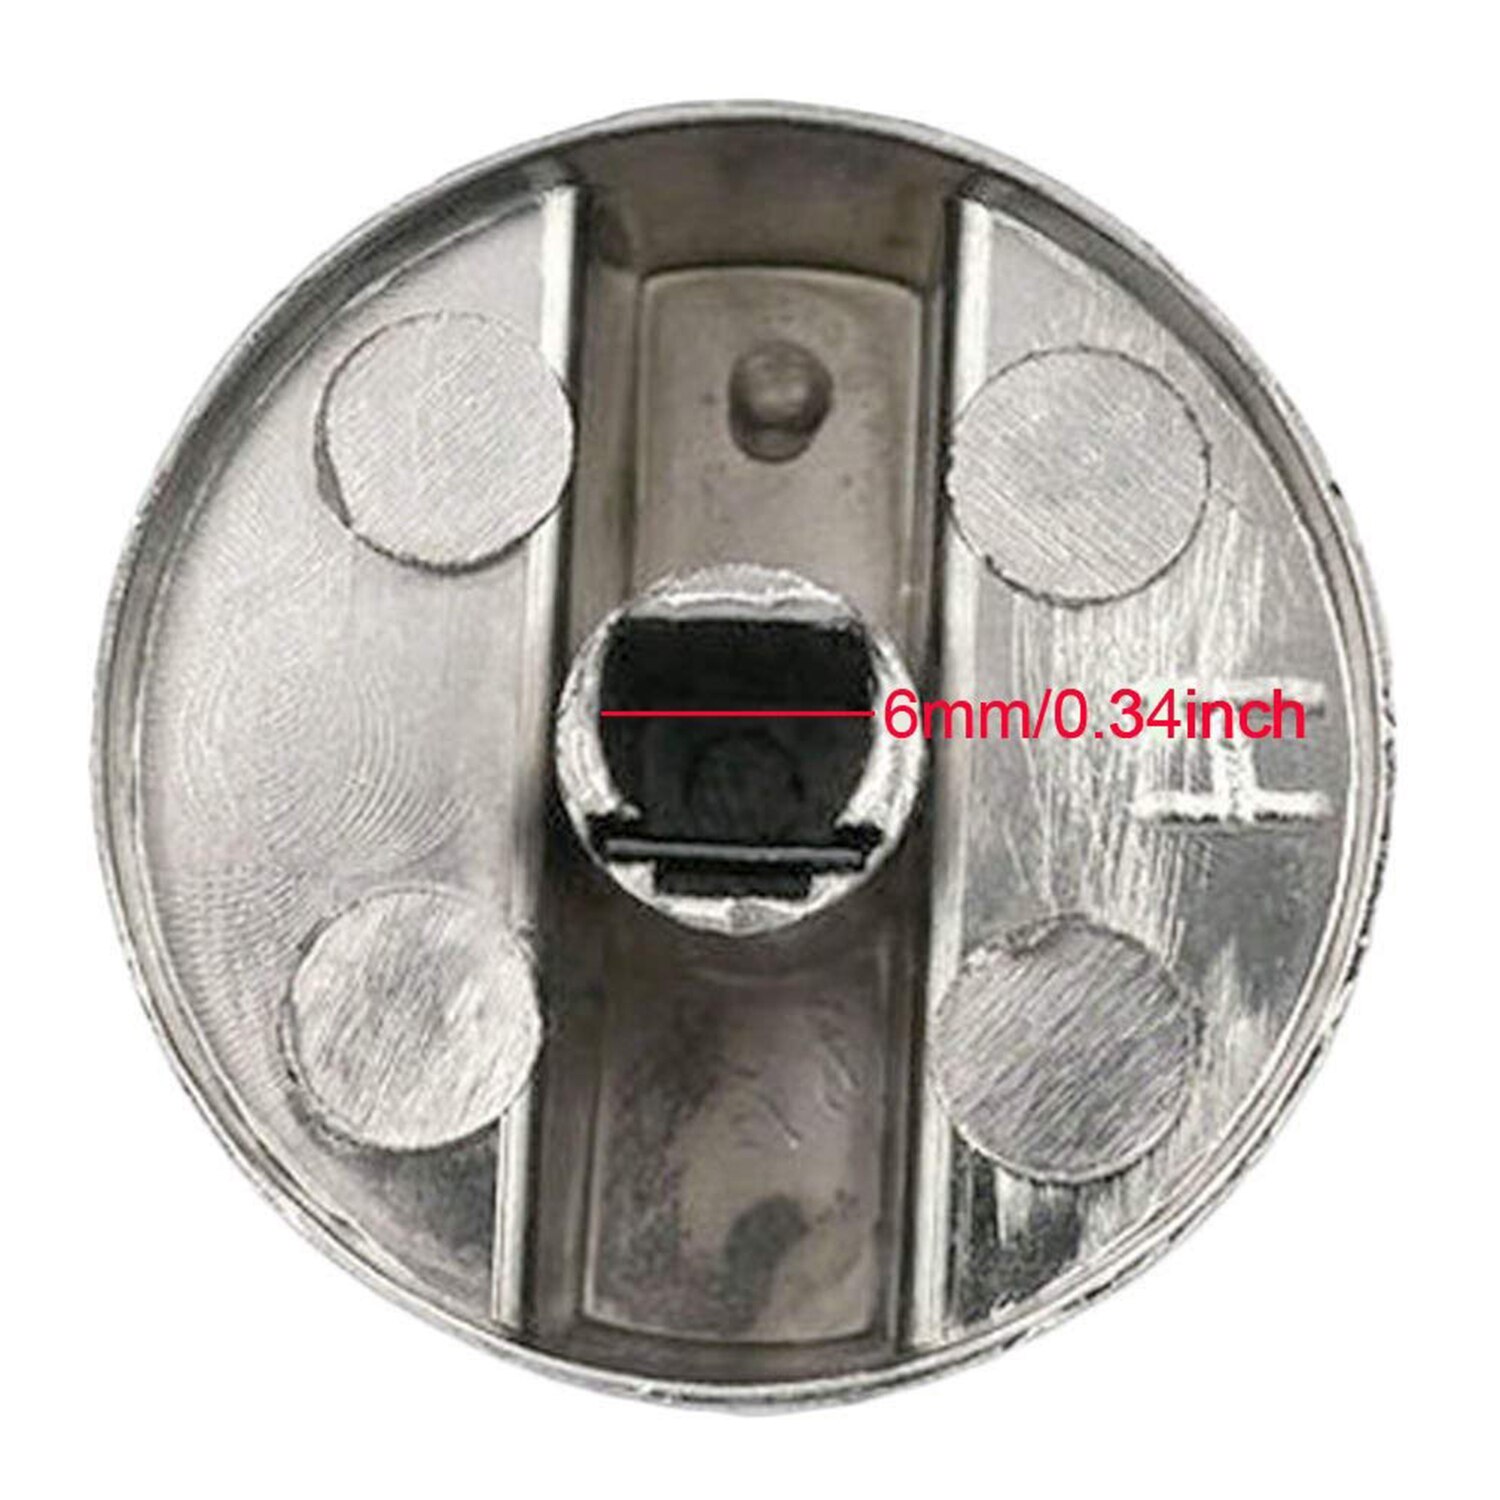 Komfurer komfur ovnknap 4 stk 6mm universal sølv gaskomfur kontrolknapper adaptere ovn drejekontakt madlavningsoverflade c